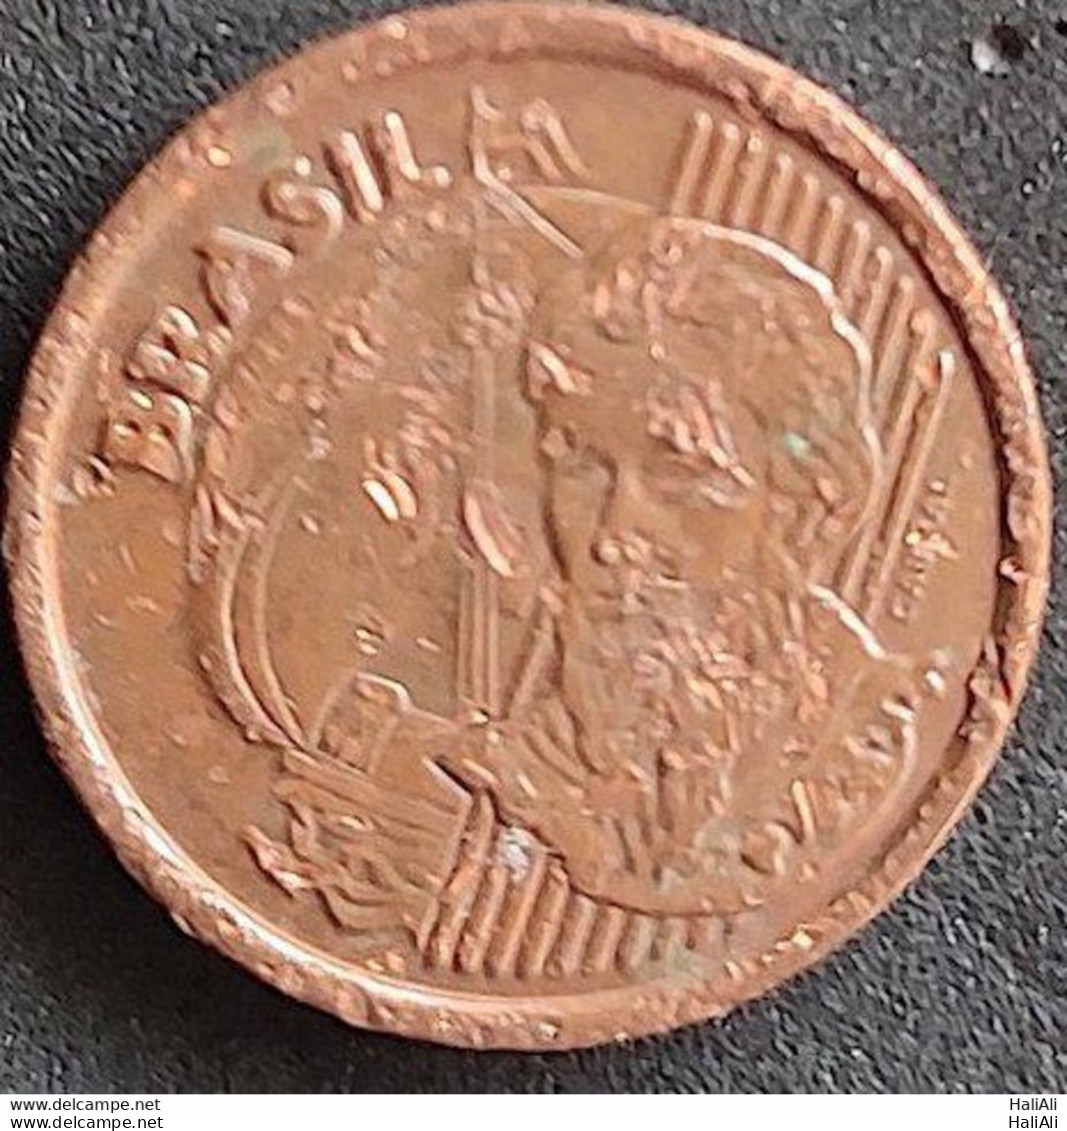 Brazil Coin 2001 1 Centavo 1 - Brasil